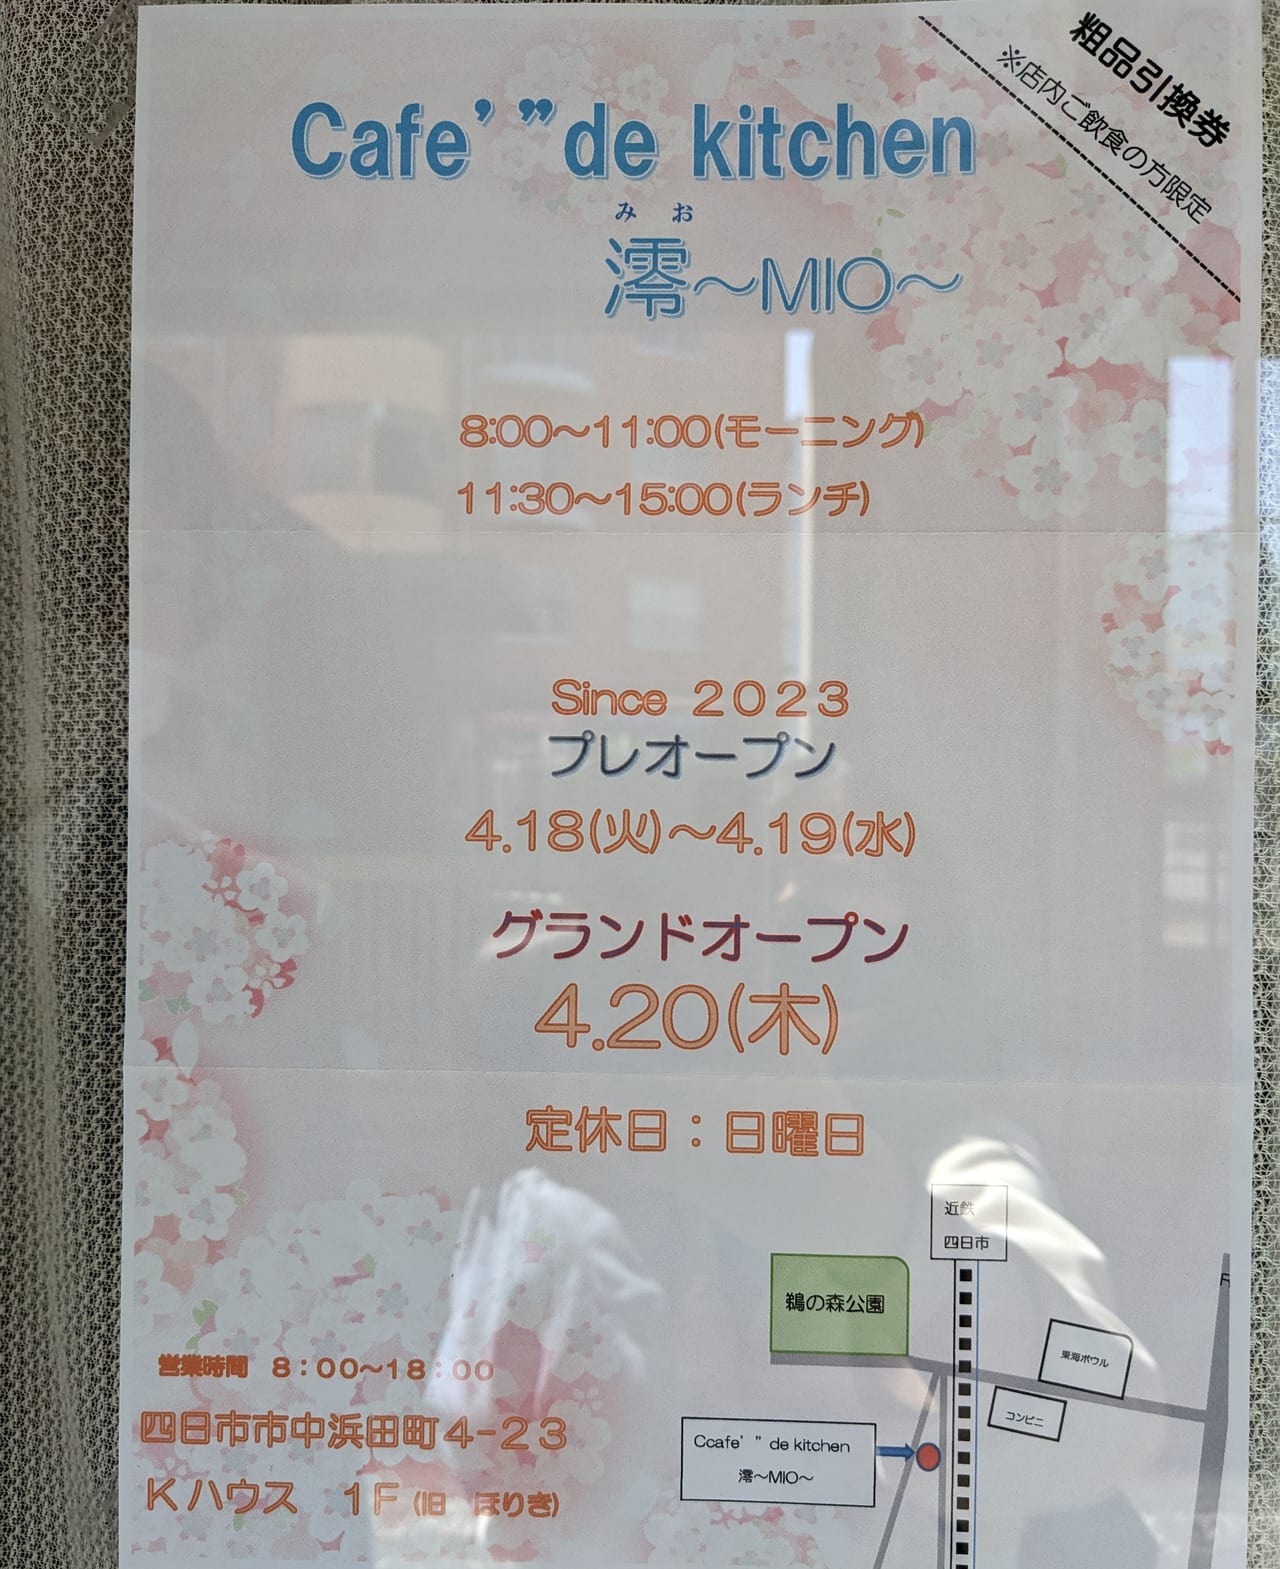 Cafe' "de kitchen 澪～MIO～